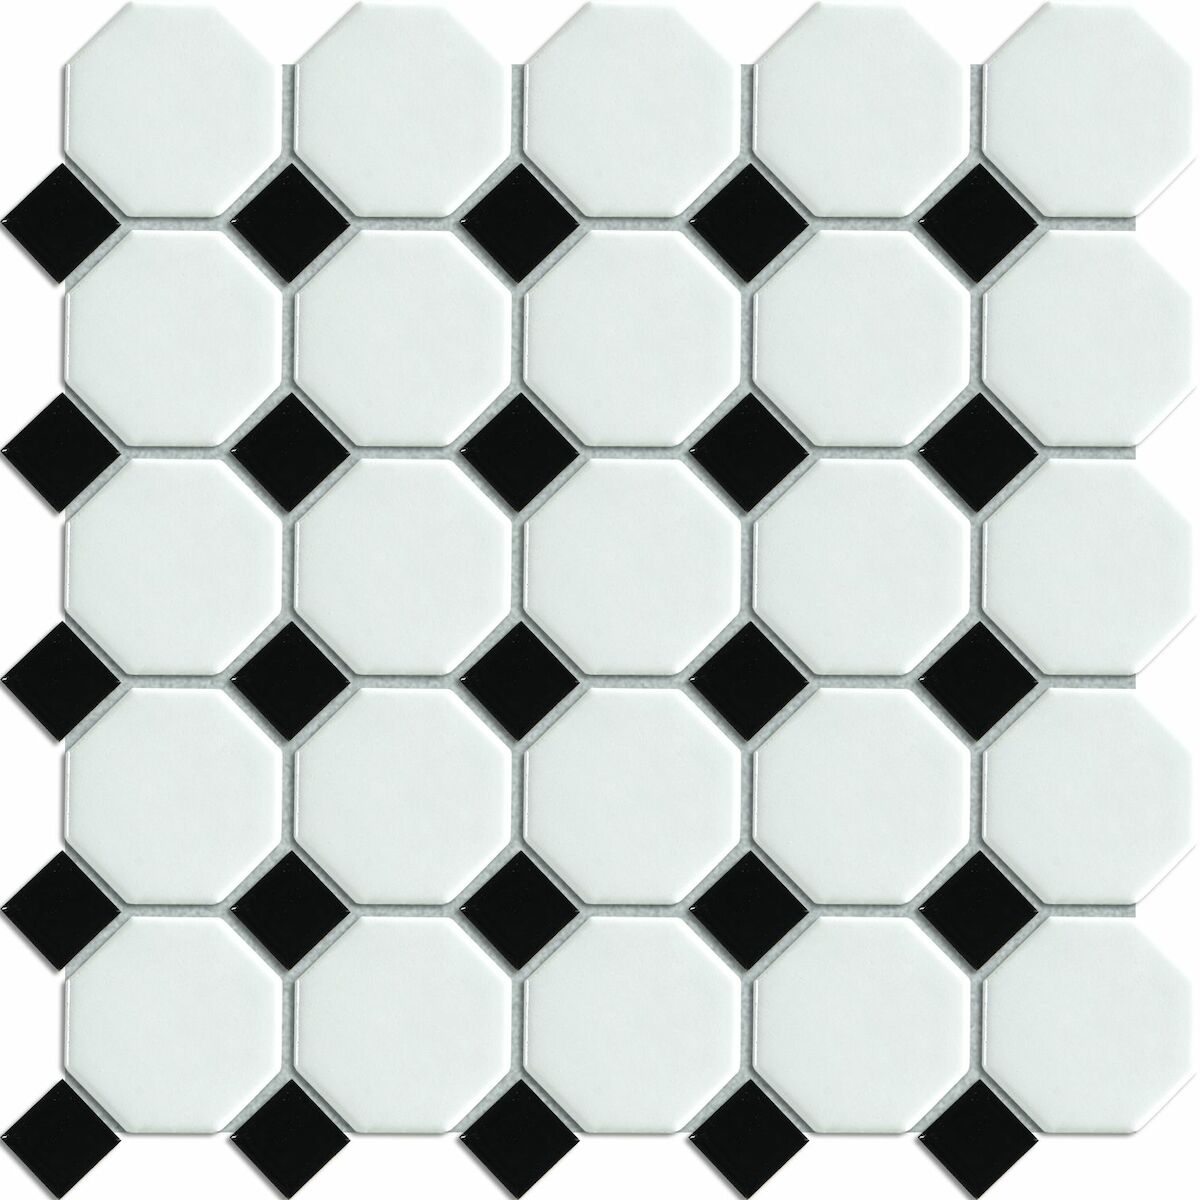 E-shop Keramická mozaika Premium Mosaic mix černá/bílá 30x30 cm mat / lesk MOSOCTAGON